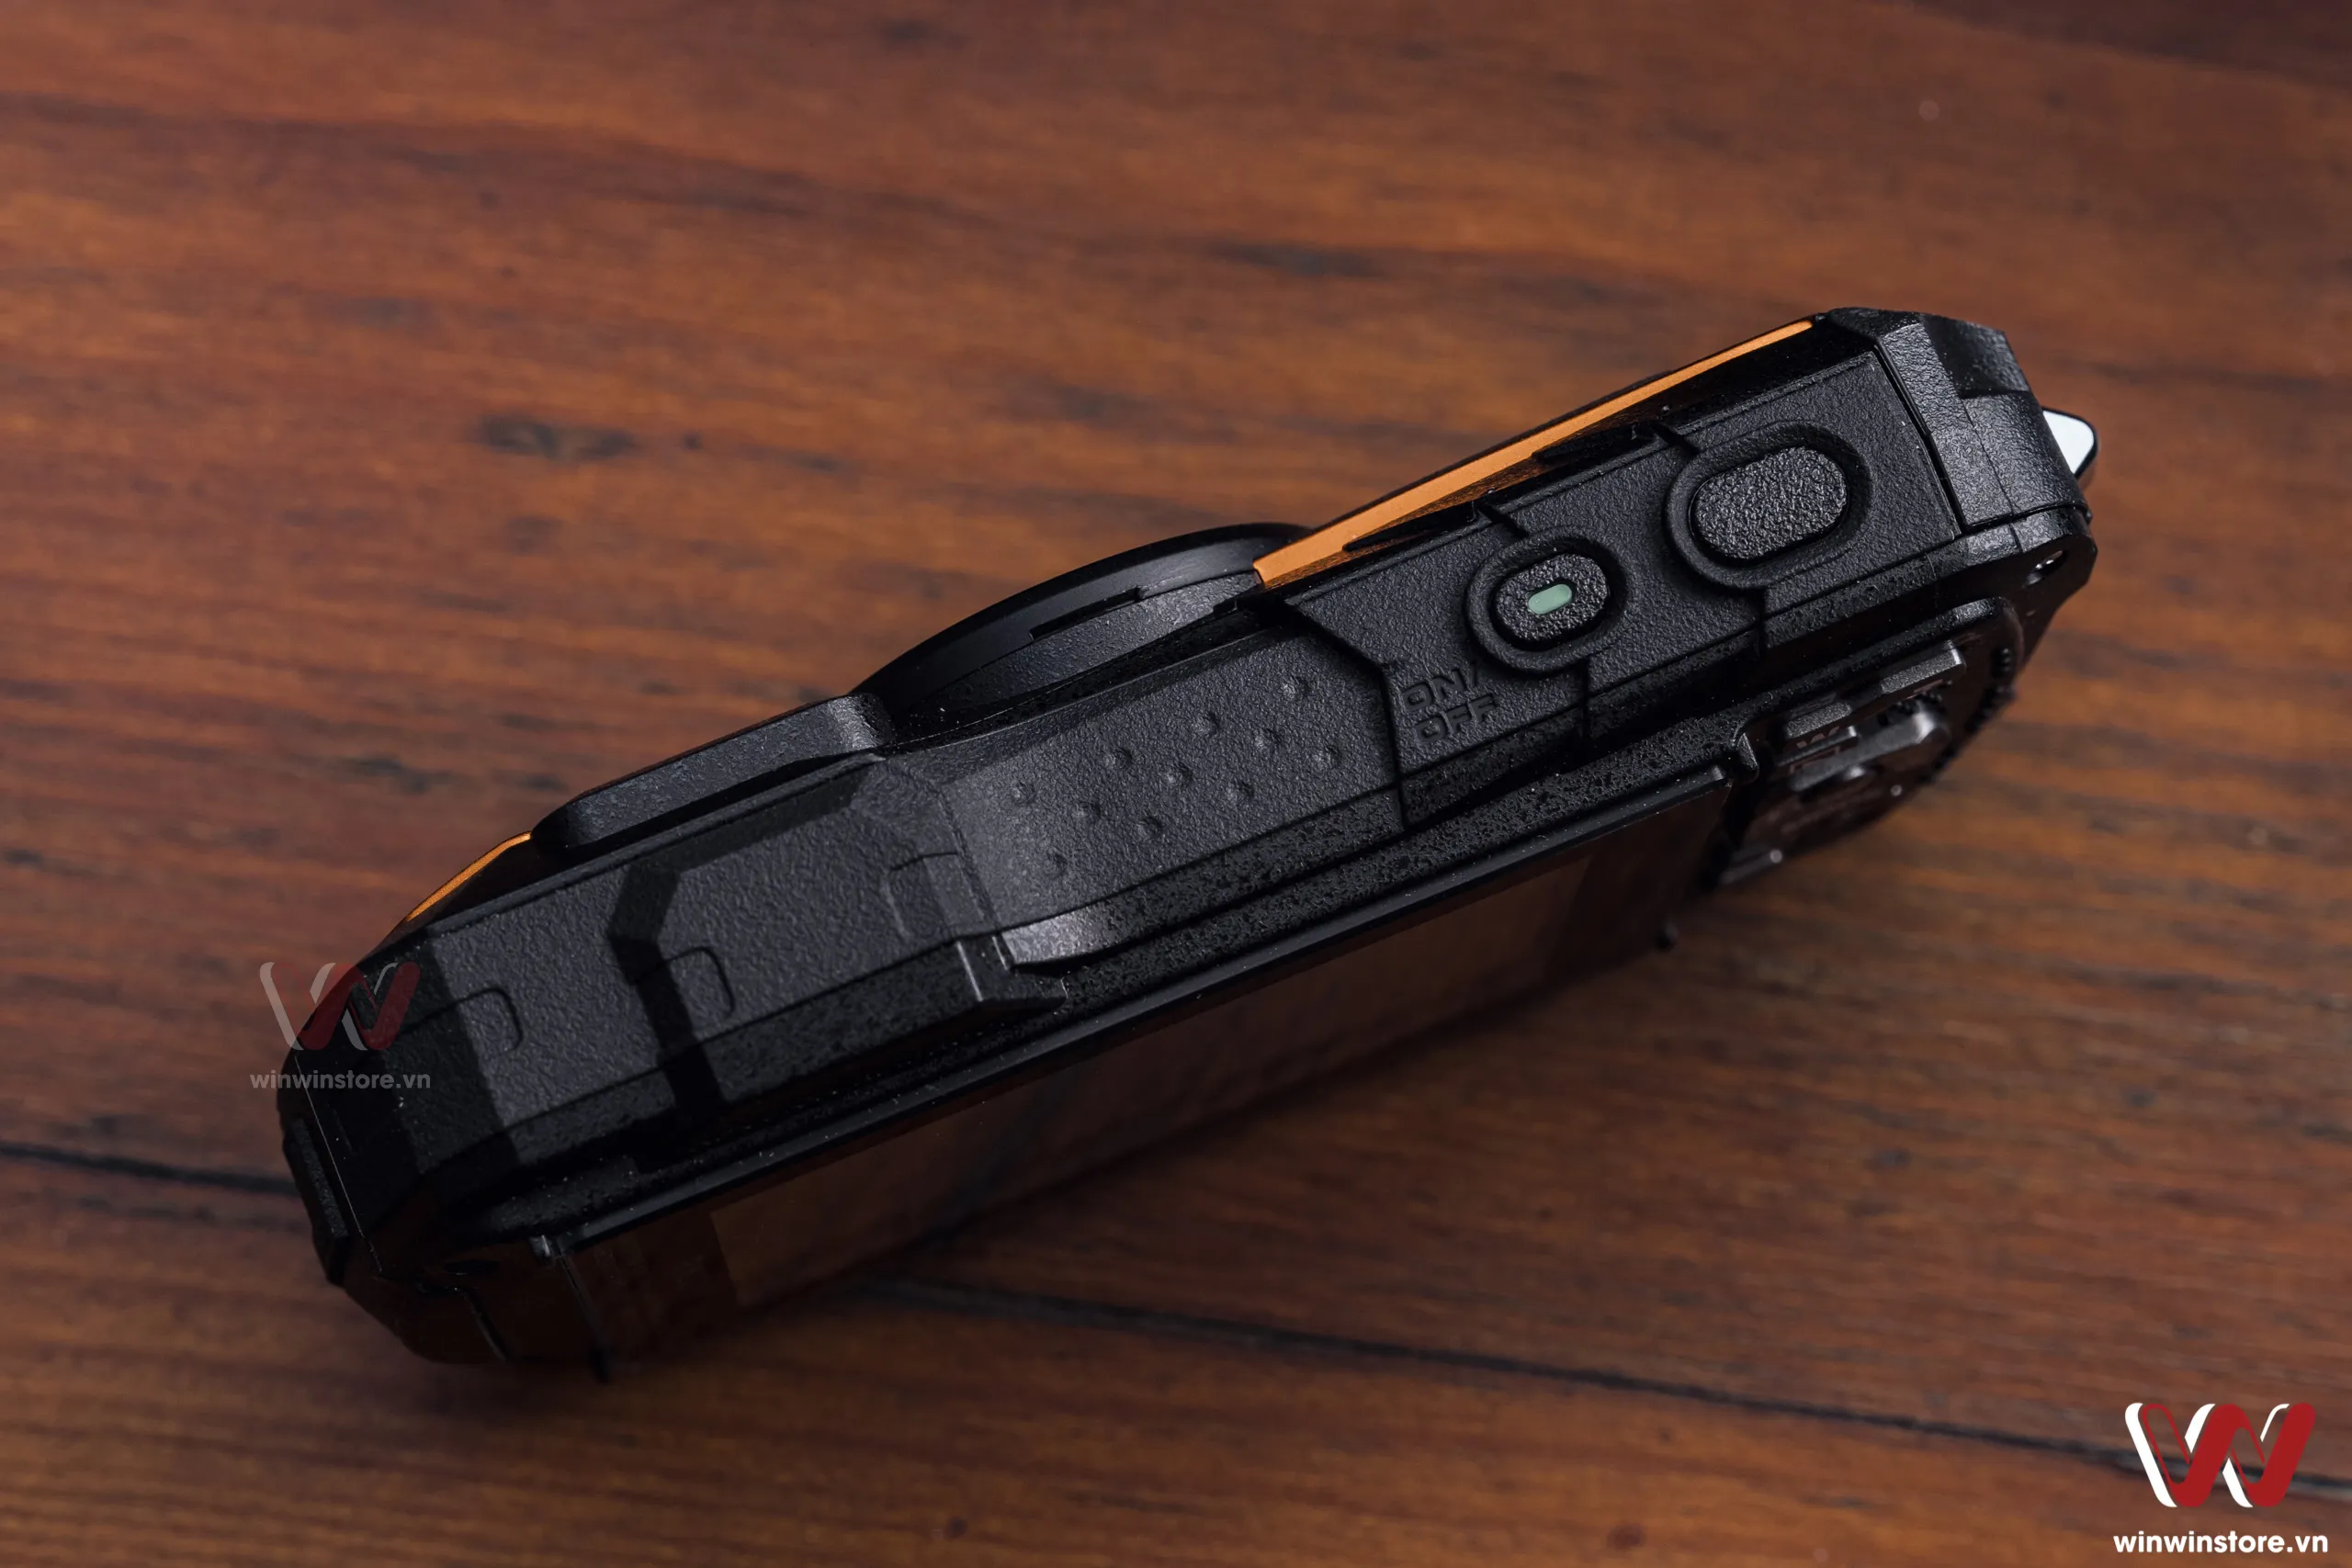 Trên tay máy ảnh compact chống nước Ricoh WG-80 bền bỉ cho các nhu cầu chụp đặc biệt